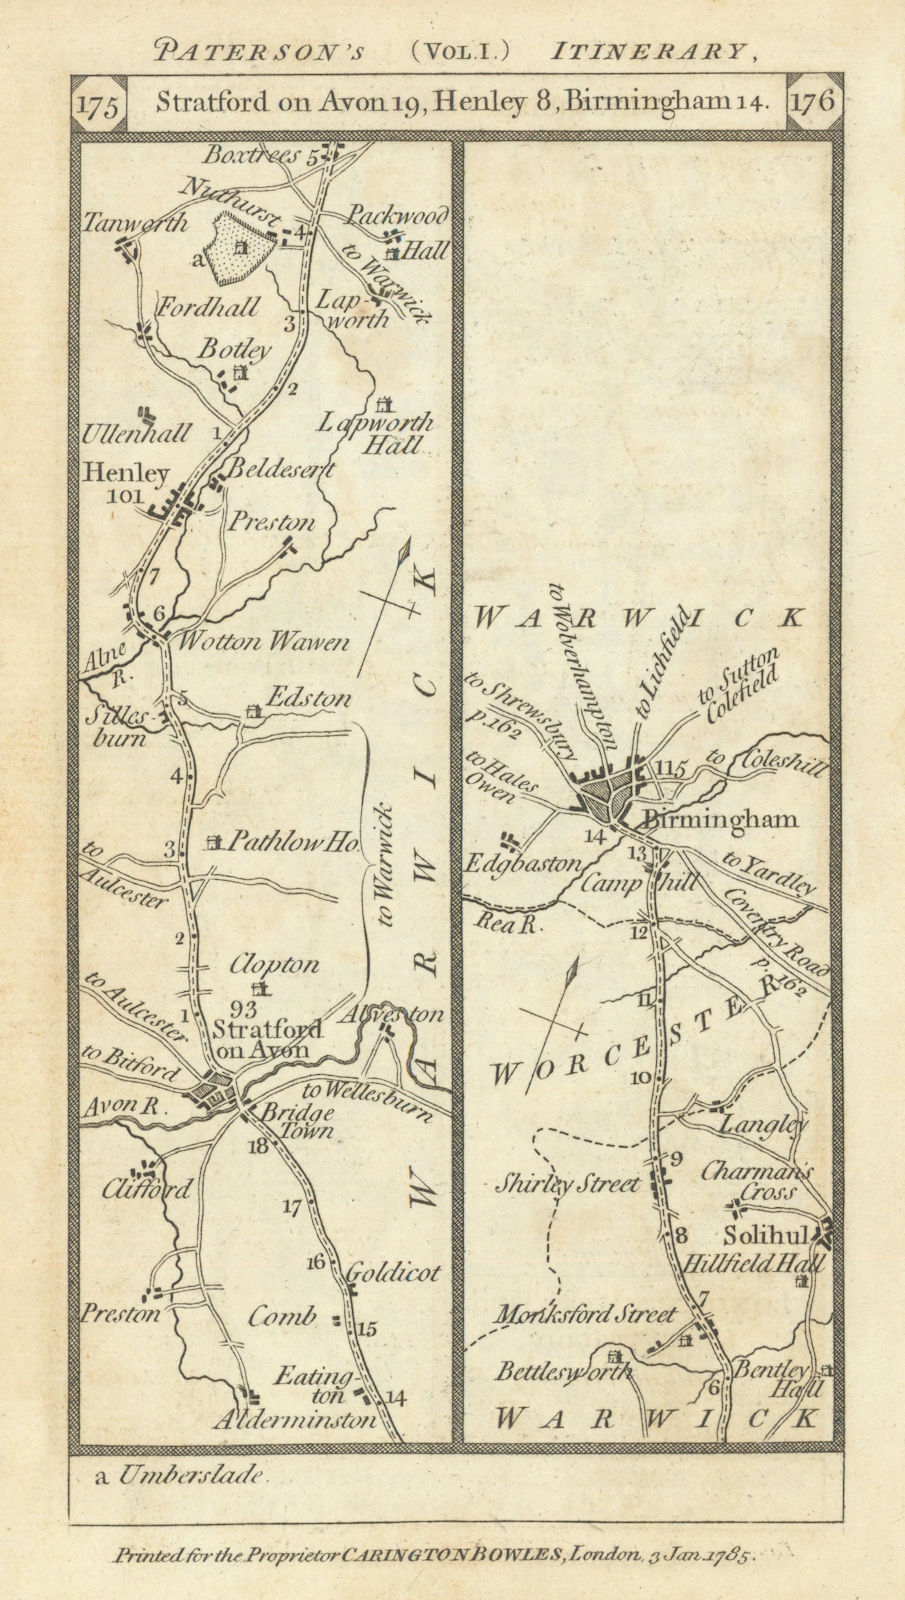 Stratford/Avon-Henley/Arden-Solihull-Birmingham road strip map PATERSON 1785